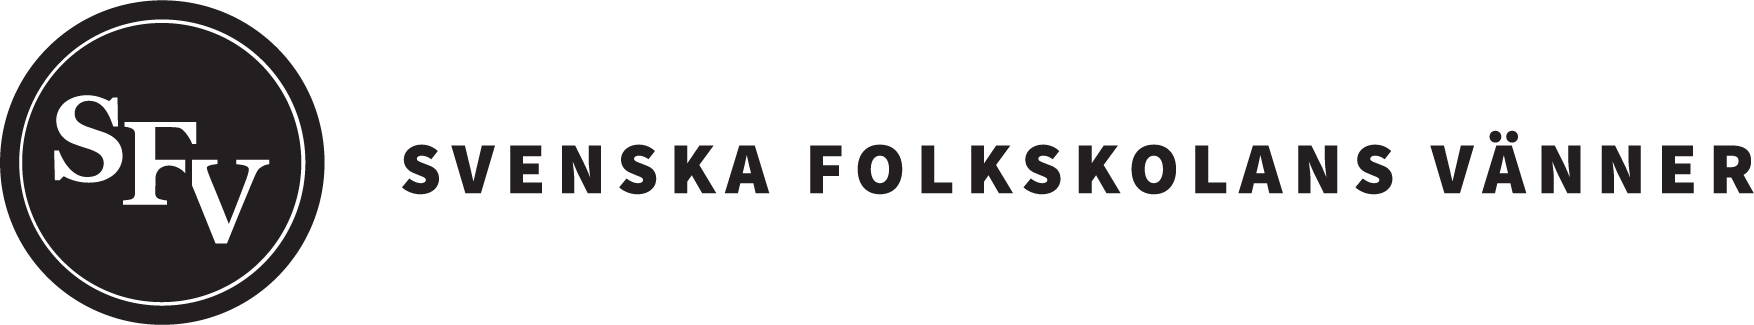 SFV - Svenska folkskolans vänners logo.